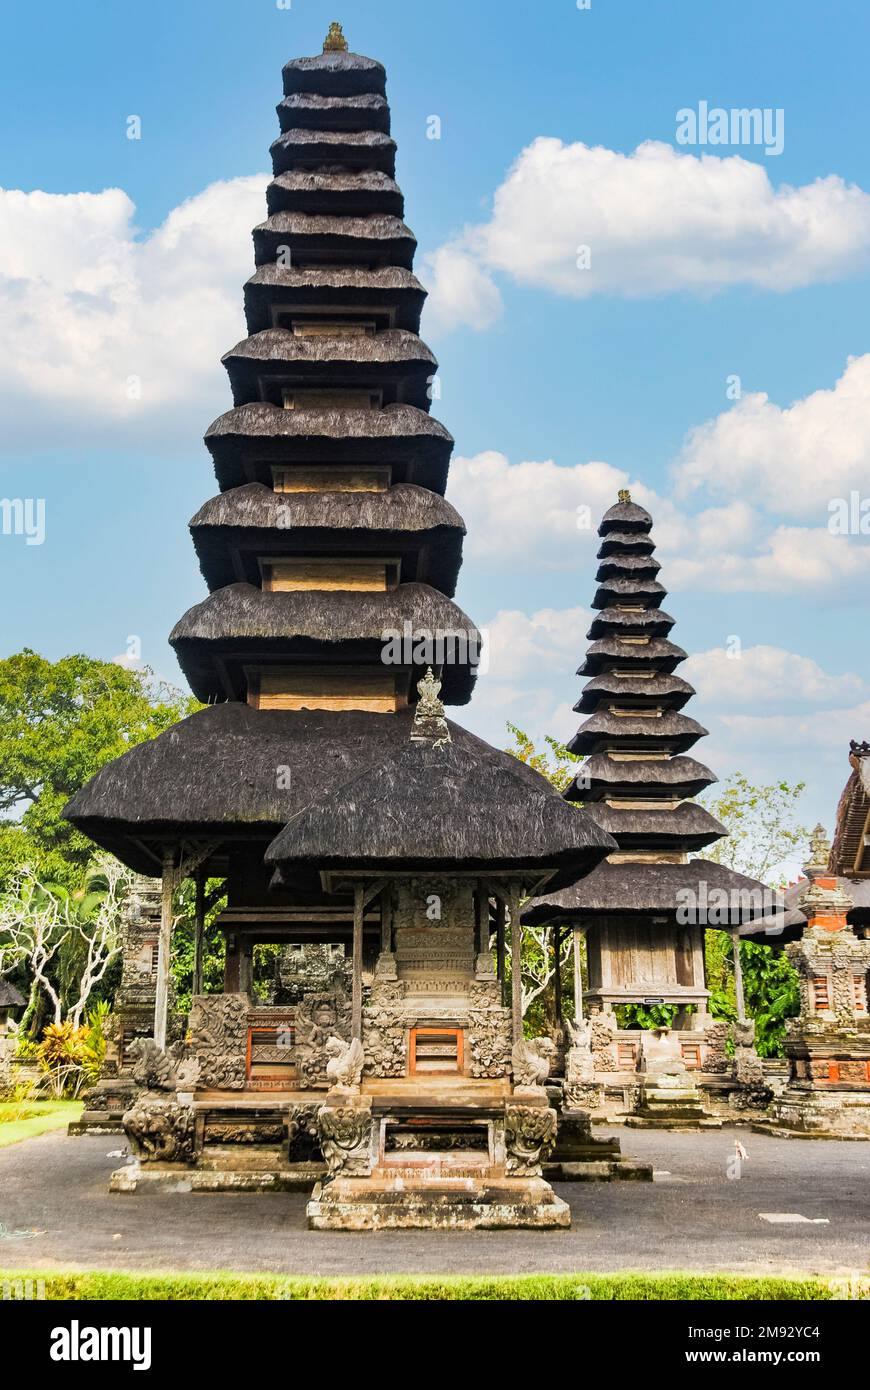 Pura Taman Ayun è un complesso di tempio balinese e giardino con caratteristiche acquatiche situato nel distretto di Mengwi a Badung Regency, Bali, Indonesia. Foto Stock